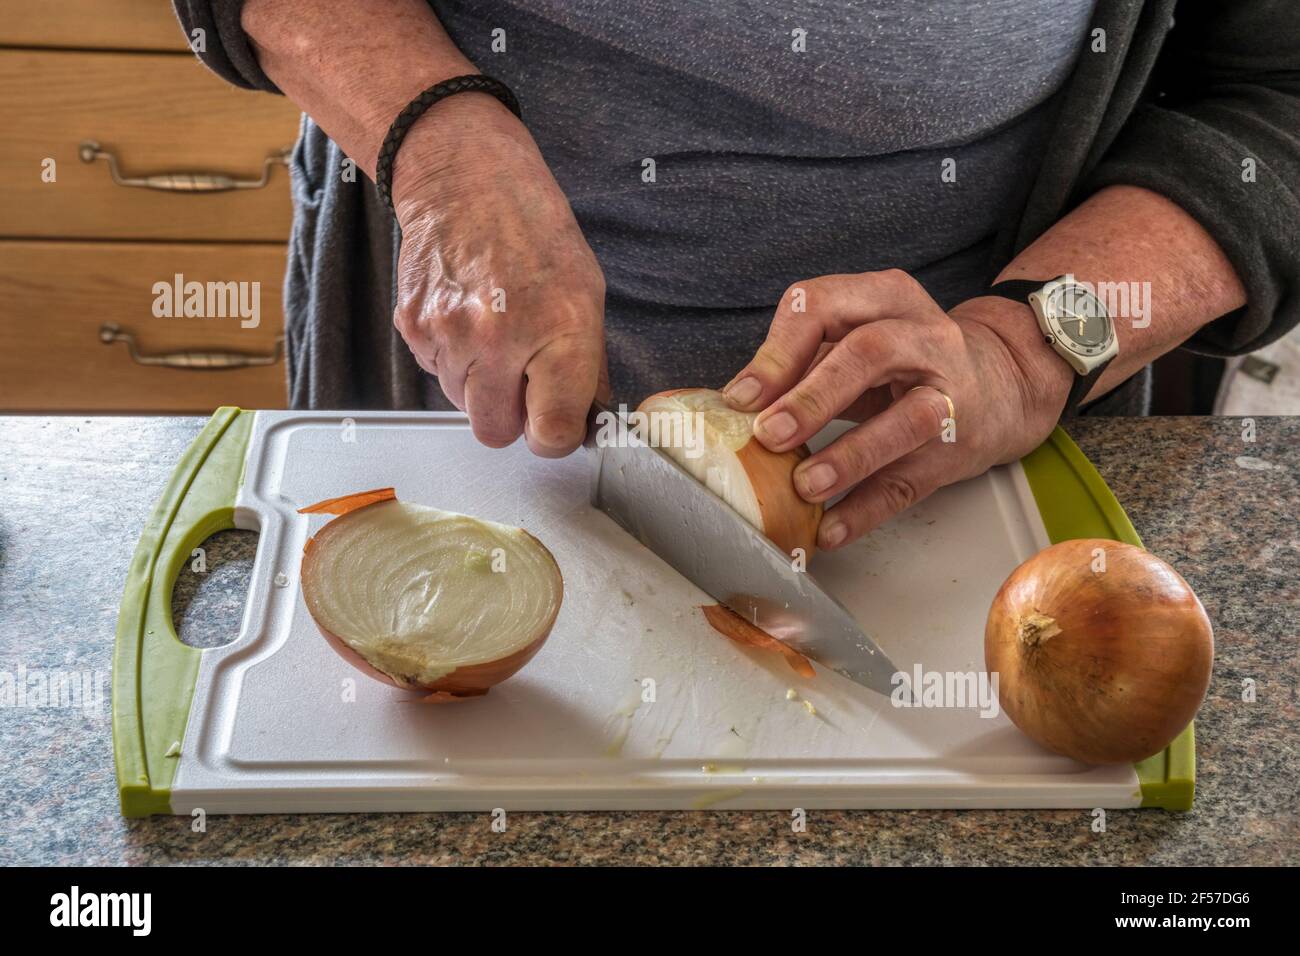 Woman chopping onions to make chutney. Stock Photo